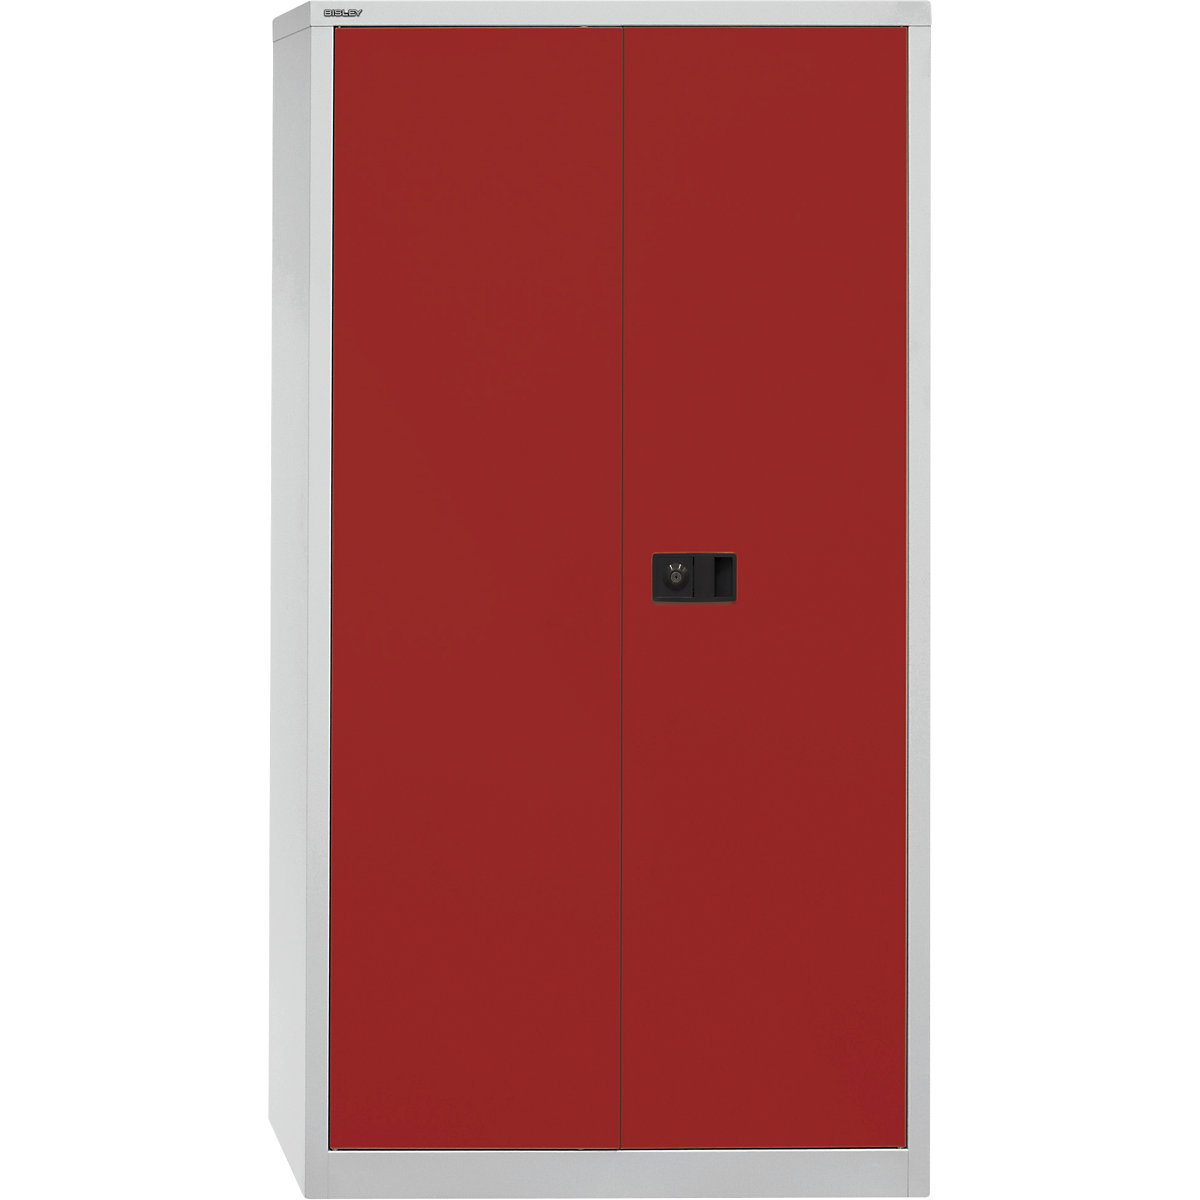 Armoire à portes battantes UNIVERSAL – BISLEY, h x l x p 1806 x 914 x 400 mm, 3 tablettes, 4 hauteurs de classeurs, gris clair / rouge cardinal-3